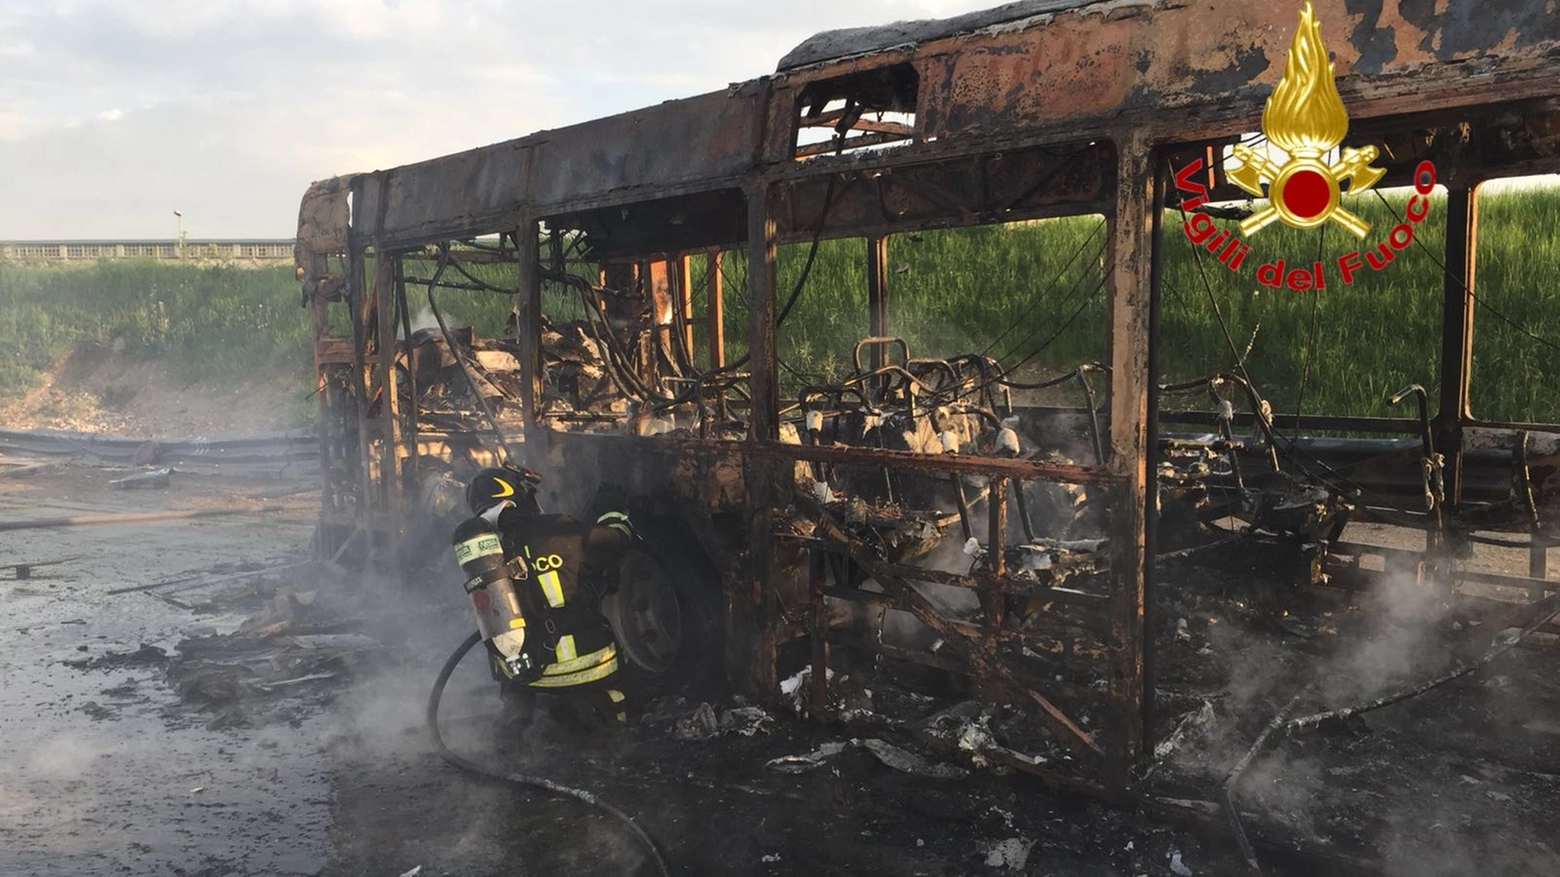 L'autobus che ha preso fuoco a Senago